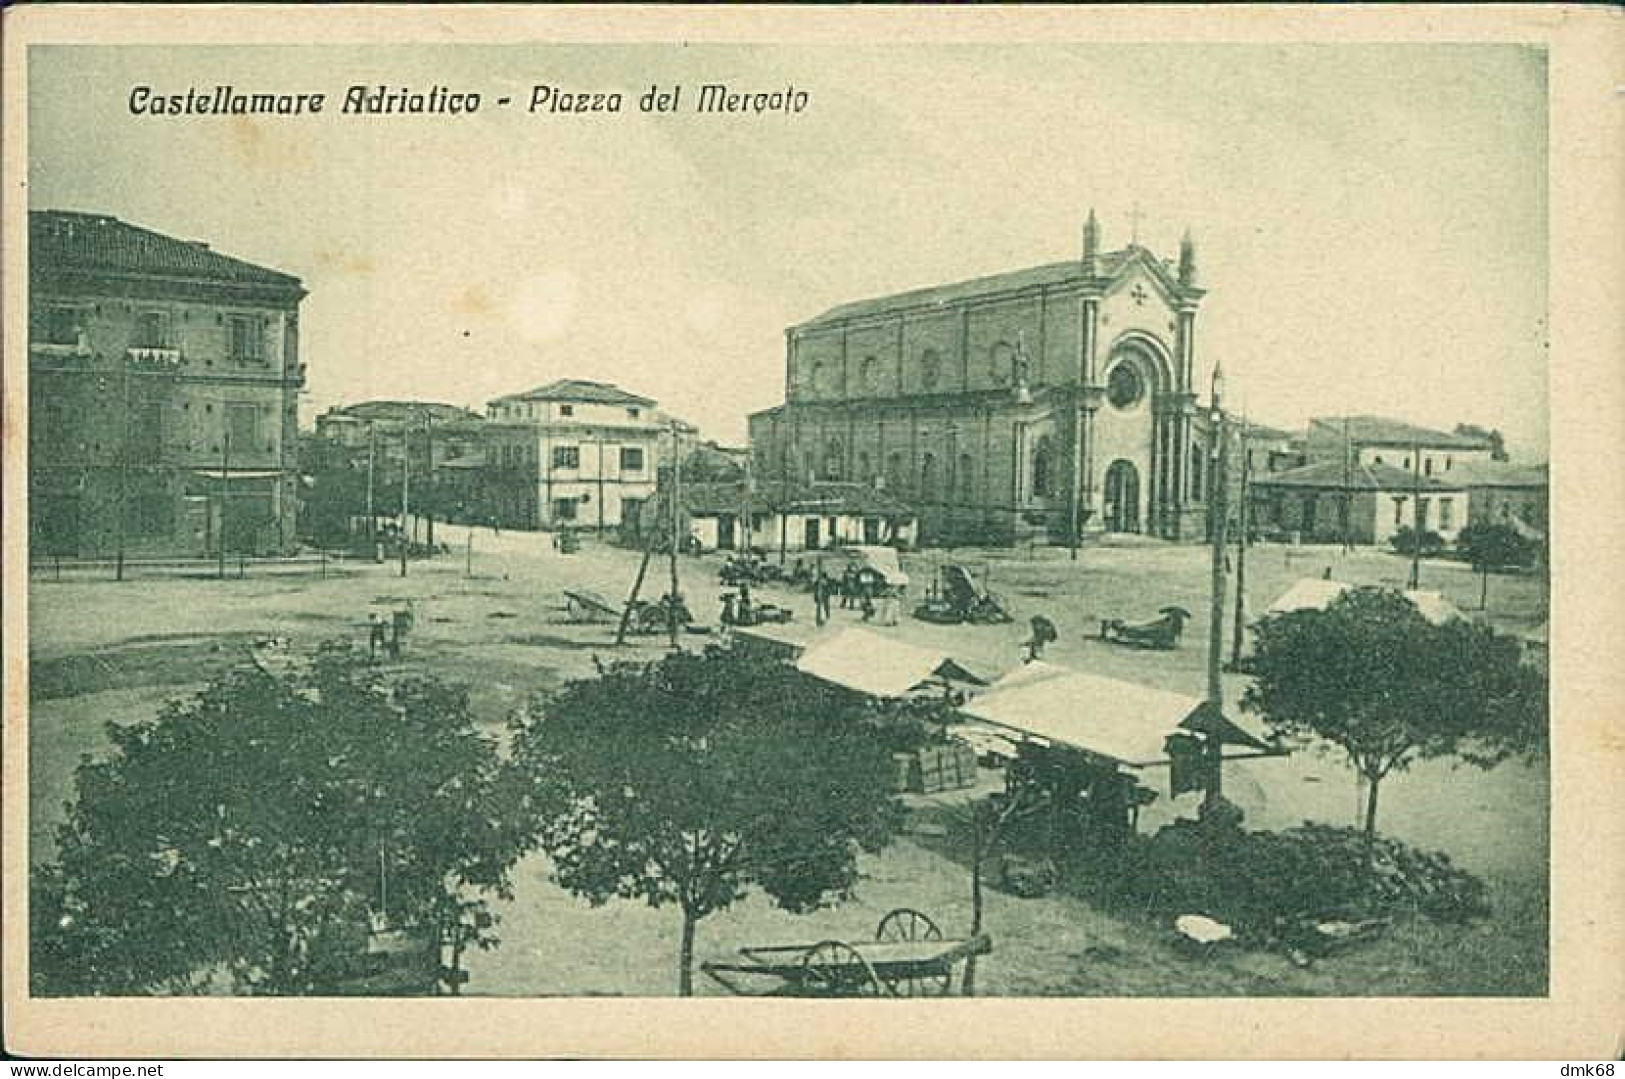 CASTELLAMMARE ADRIATICO ( PESCARA ) PIAZZA DEL MERCATO - EDIZIONE VERROCCHIO - 1920s (20338) - Pescara